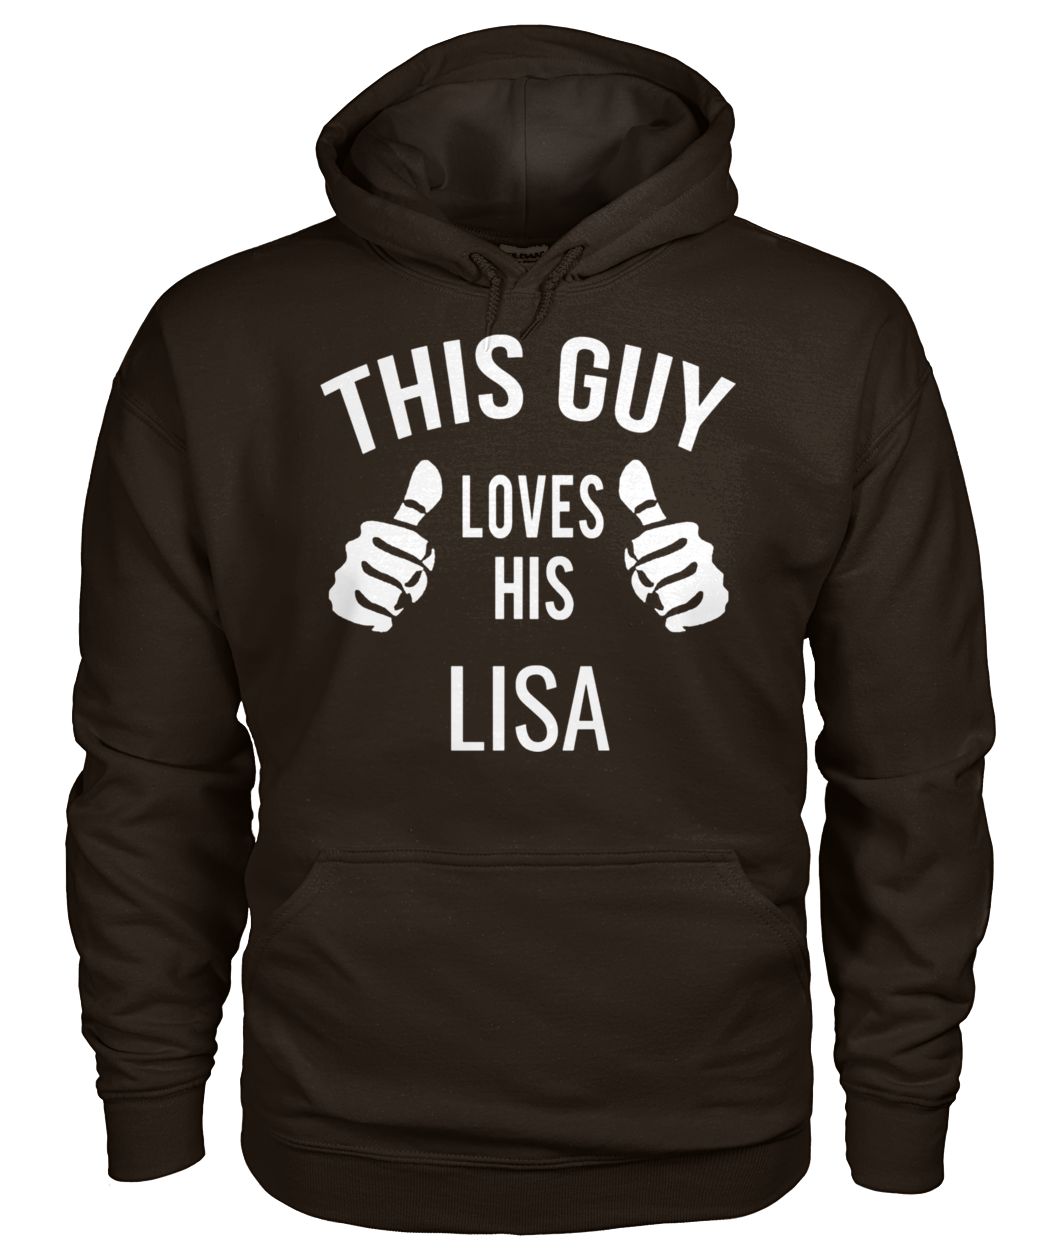 This guy loves his lisa gildan hoodie